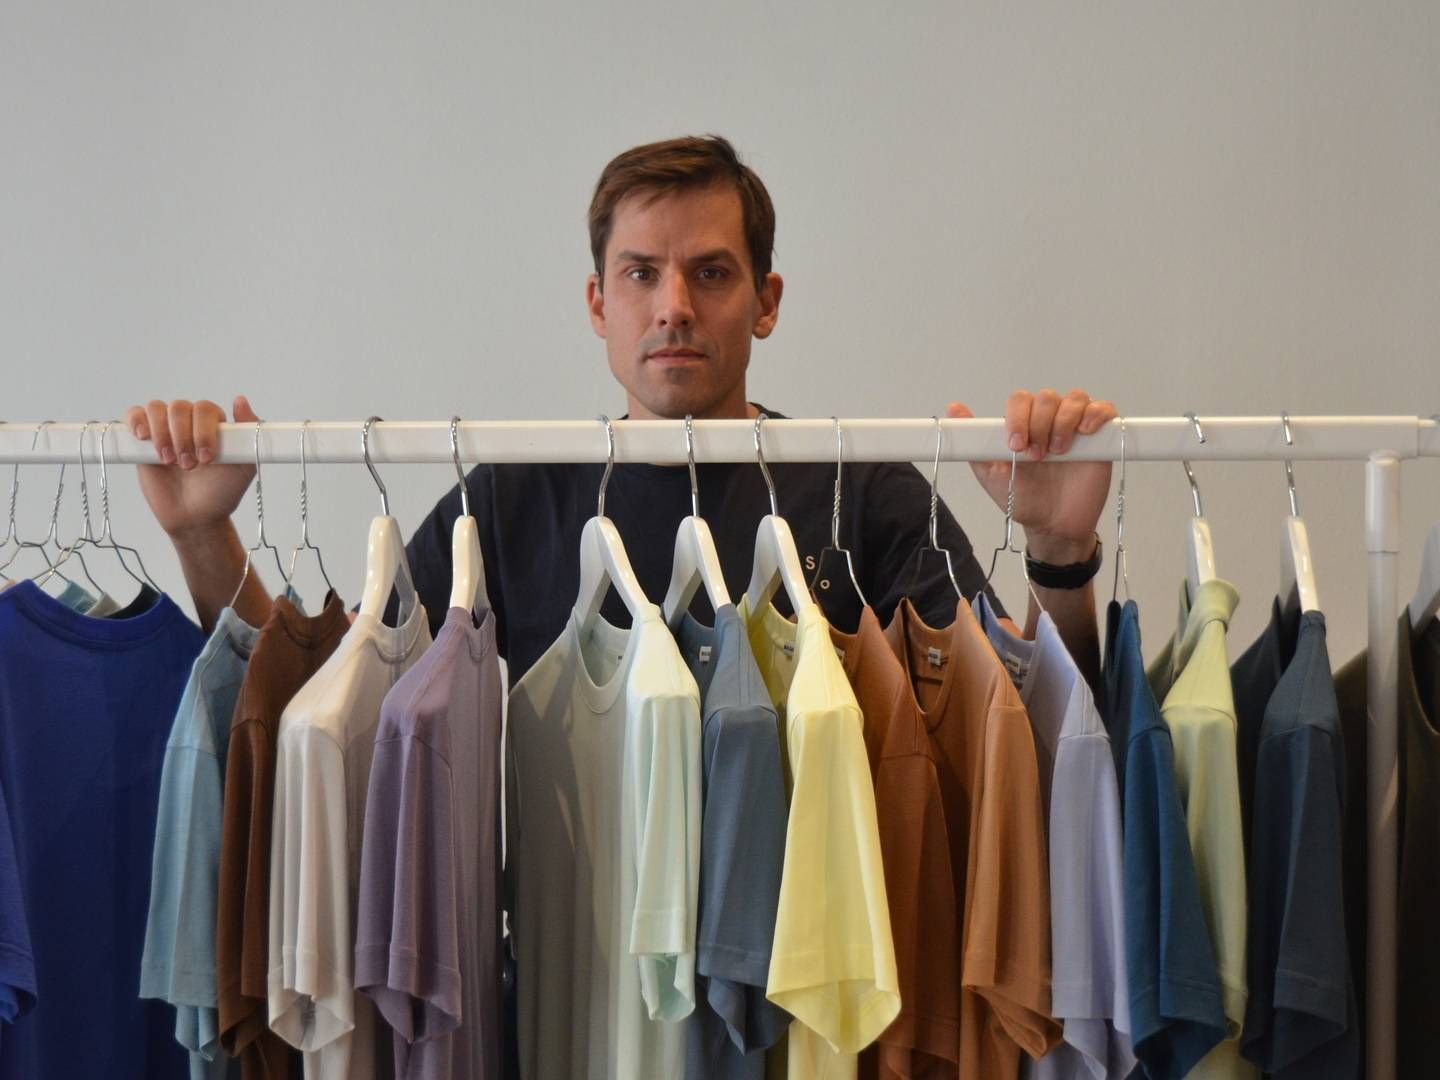 Herretøjsvirksomheden Son of a Tailor vil tage et opgør med den etablerede modeindustris overproduktion, som stifter Jess Fleischer mener er "forældet bæredygtighedsmæssigt. | Foto: Alexander Thorup